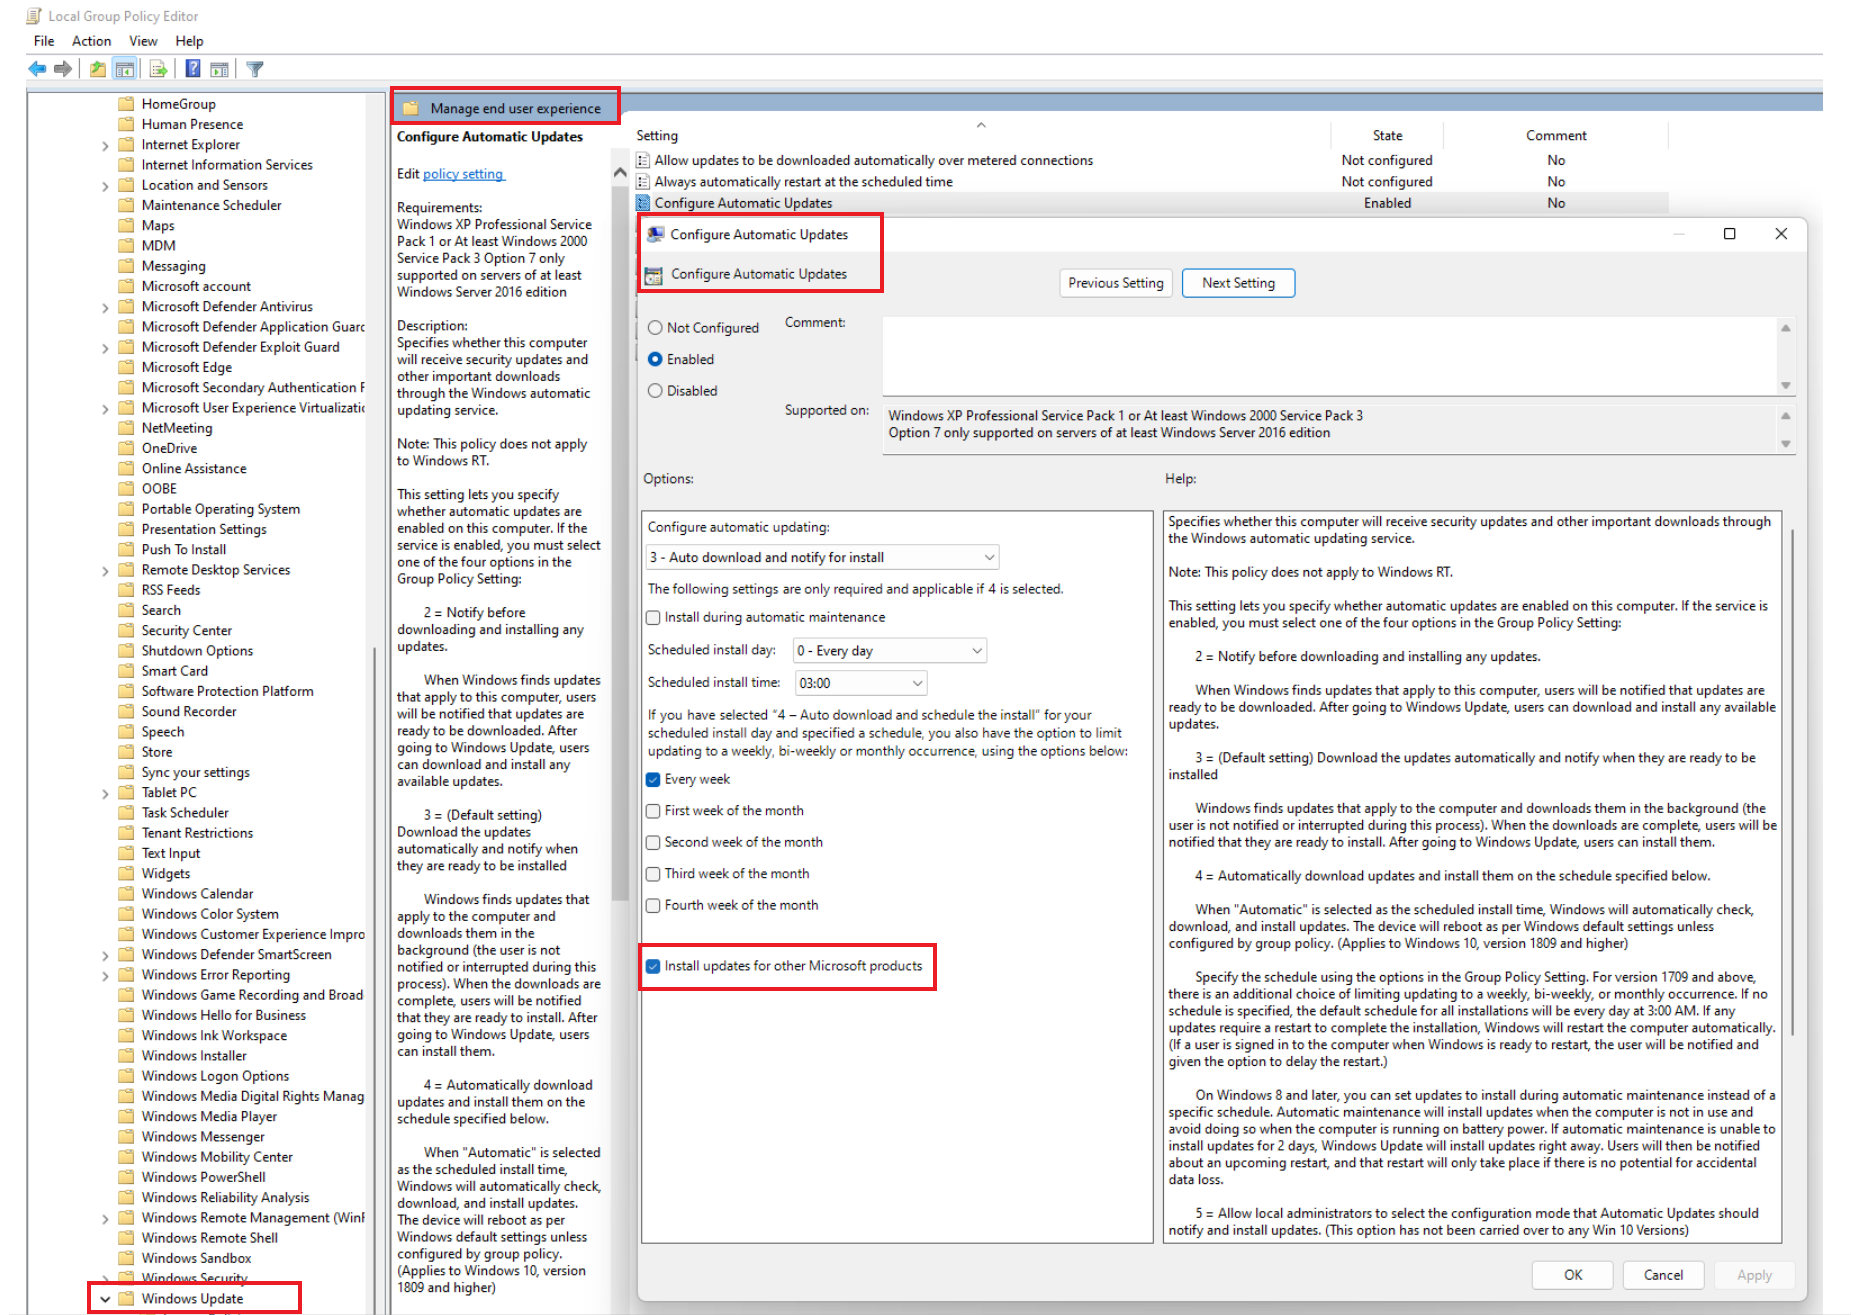 Recorte de pantalla de la selección o anulación de la selección de la instalación de actualizaciones para otros productos de Microsoft.